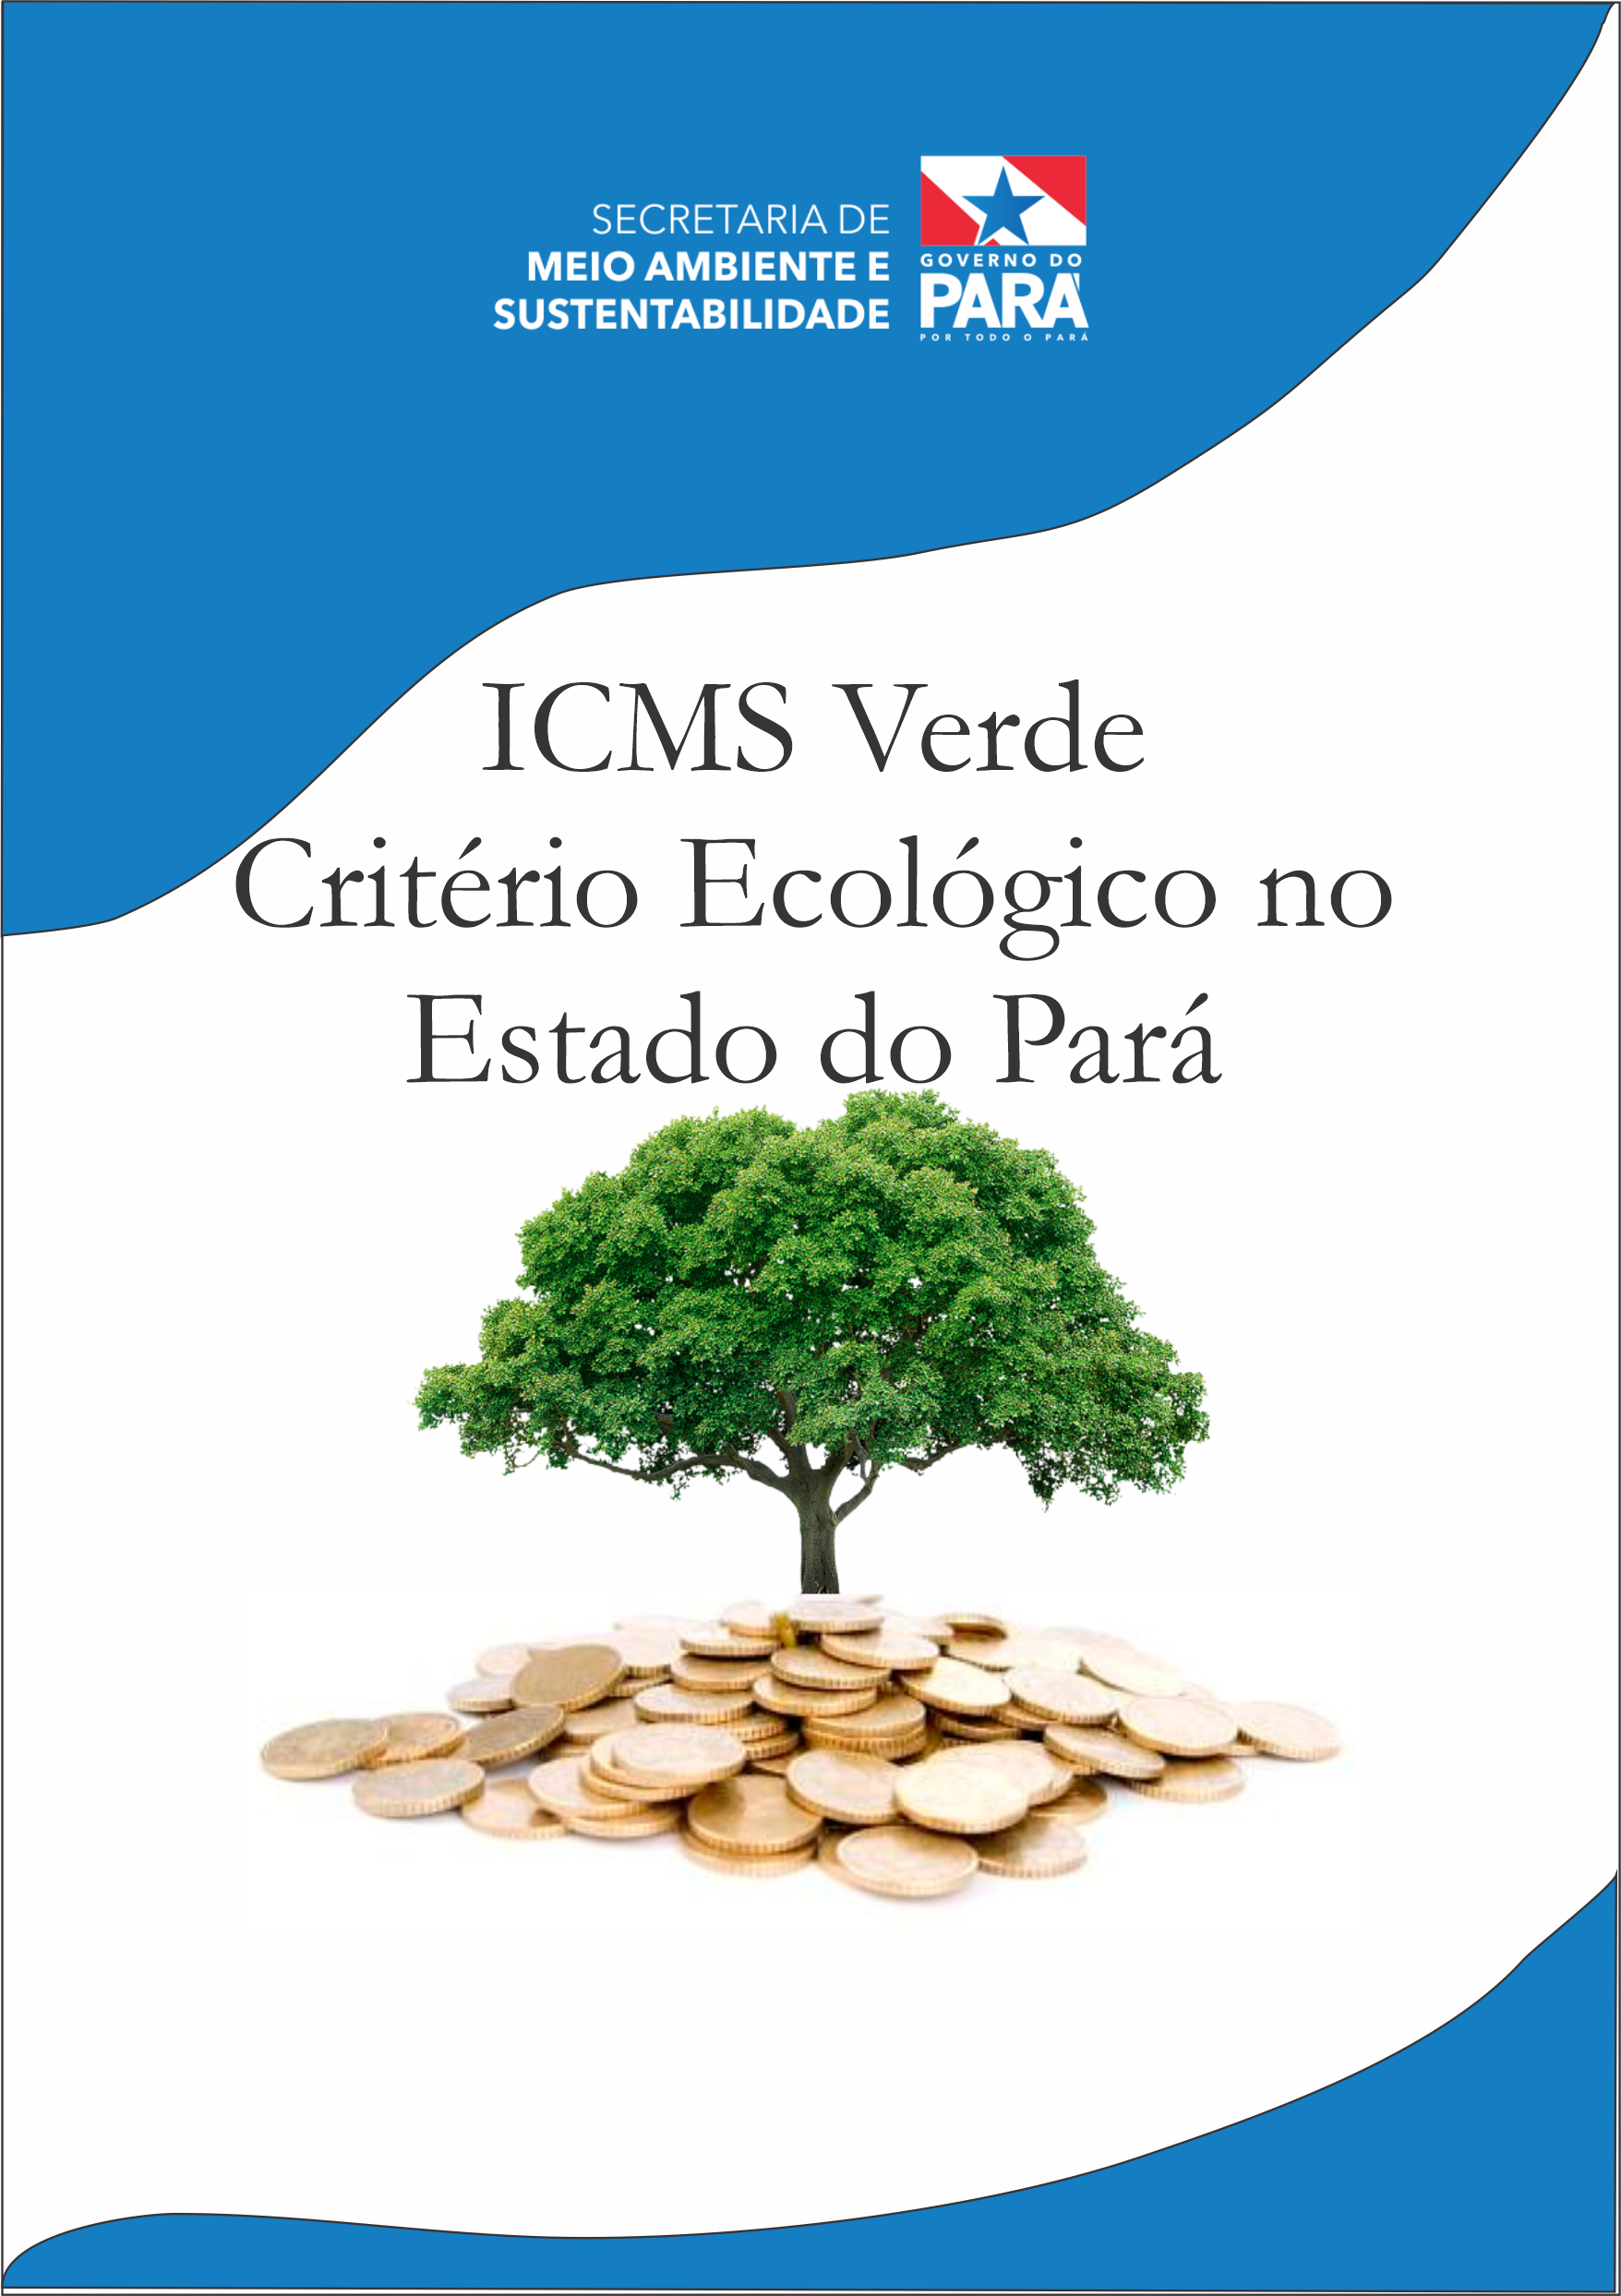 Primeira Cartilha do ICMS Verde